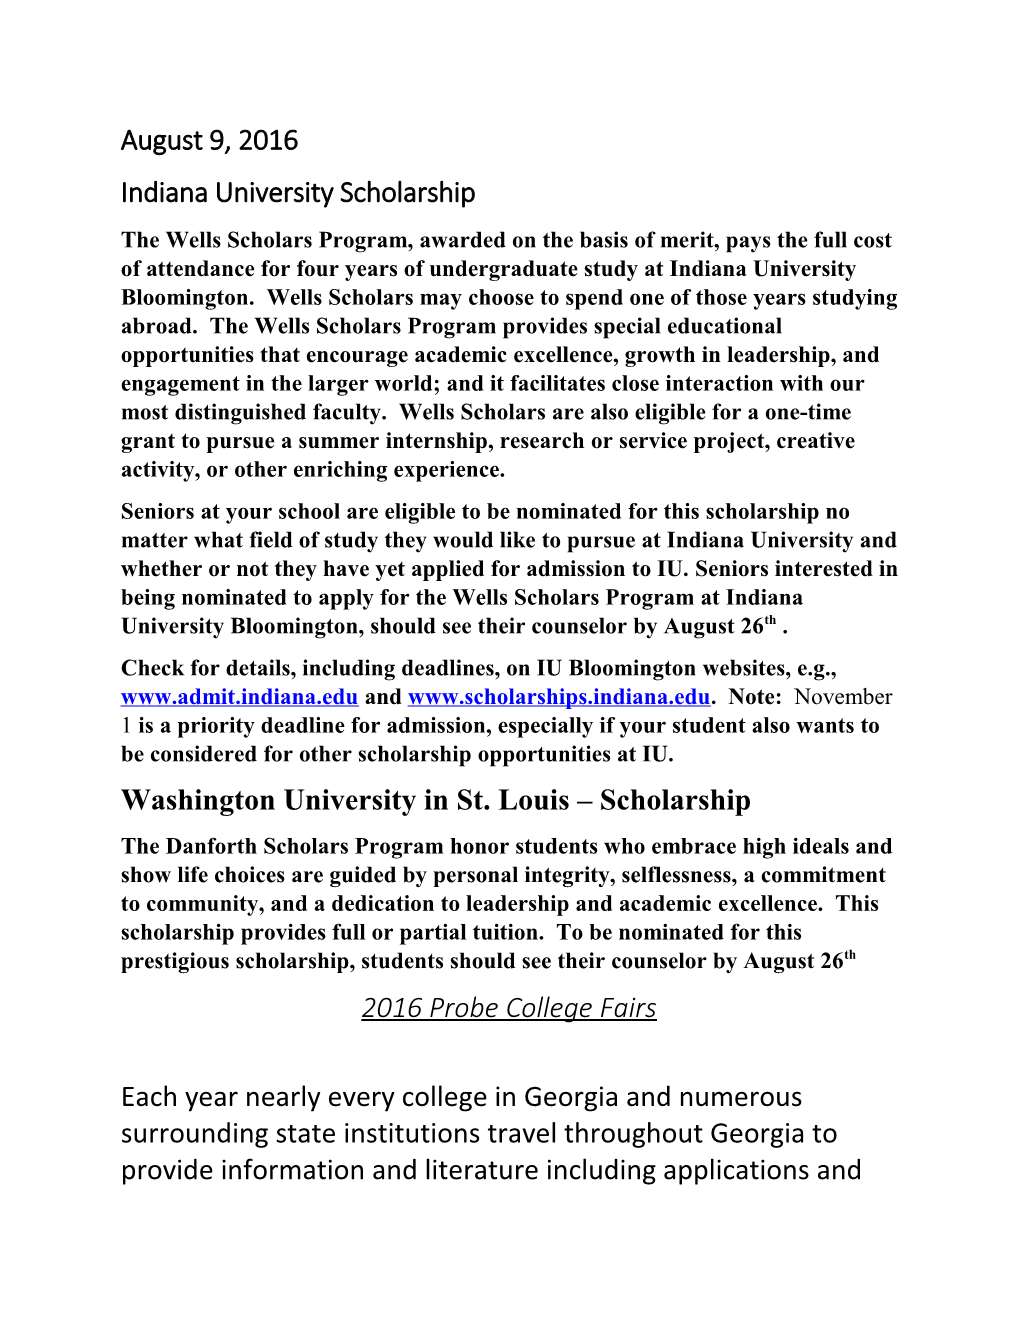 Indiana University Scholarship